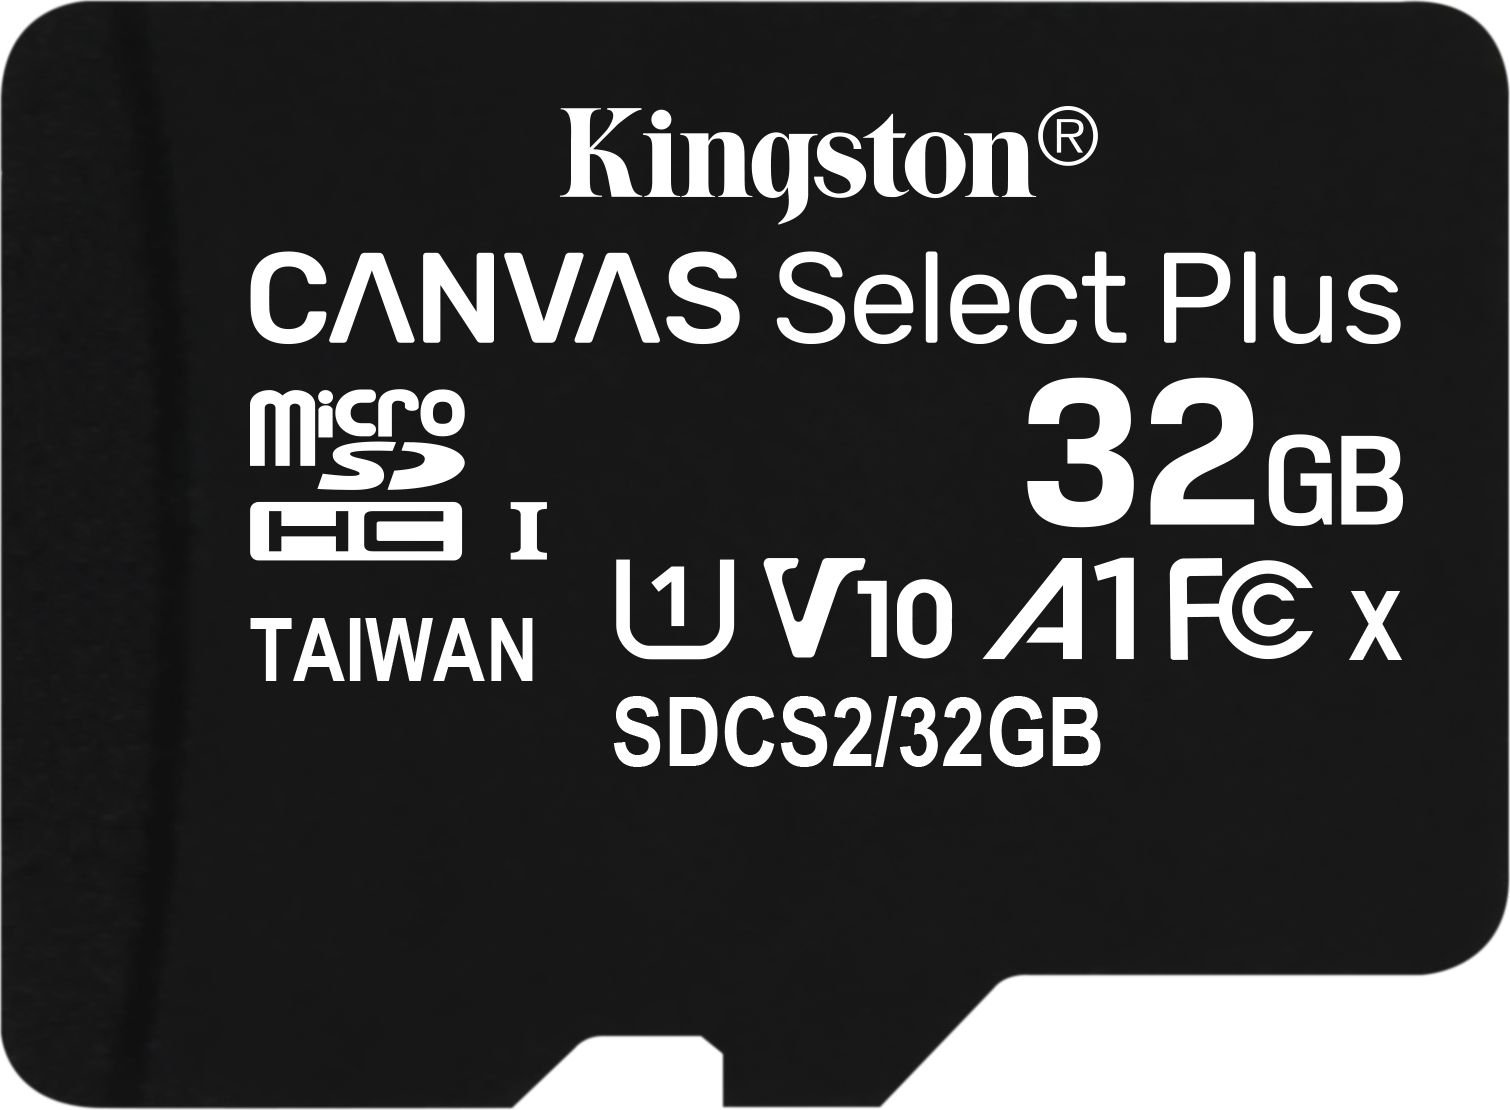 Karta Kingston Canvas Select Plus MicroSDHC 32 GB Class 10 UHS-I/U1 A1 V10 (SDCS2/32GB)